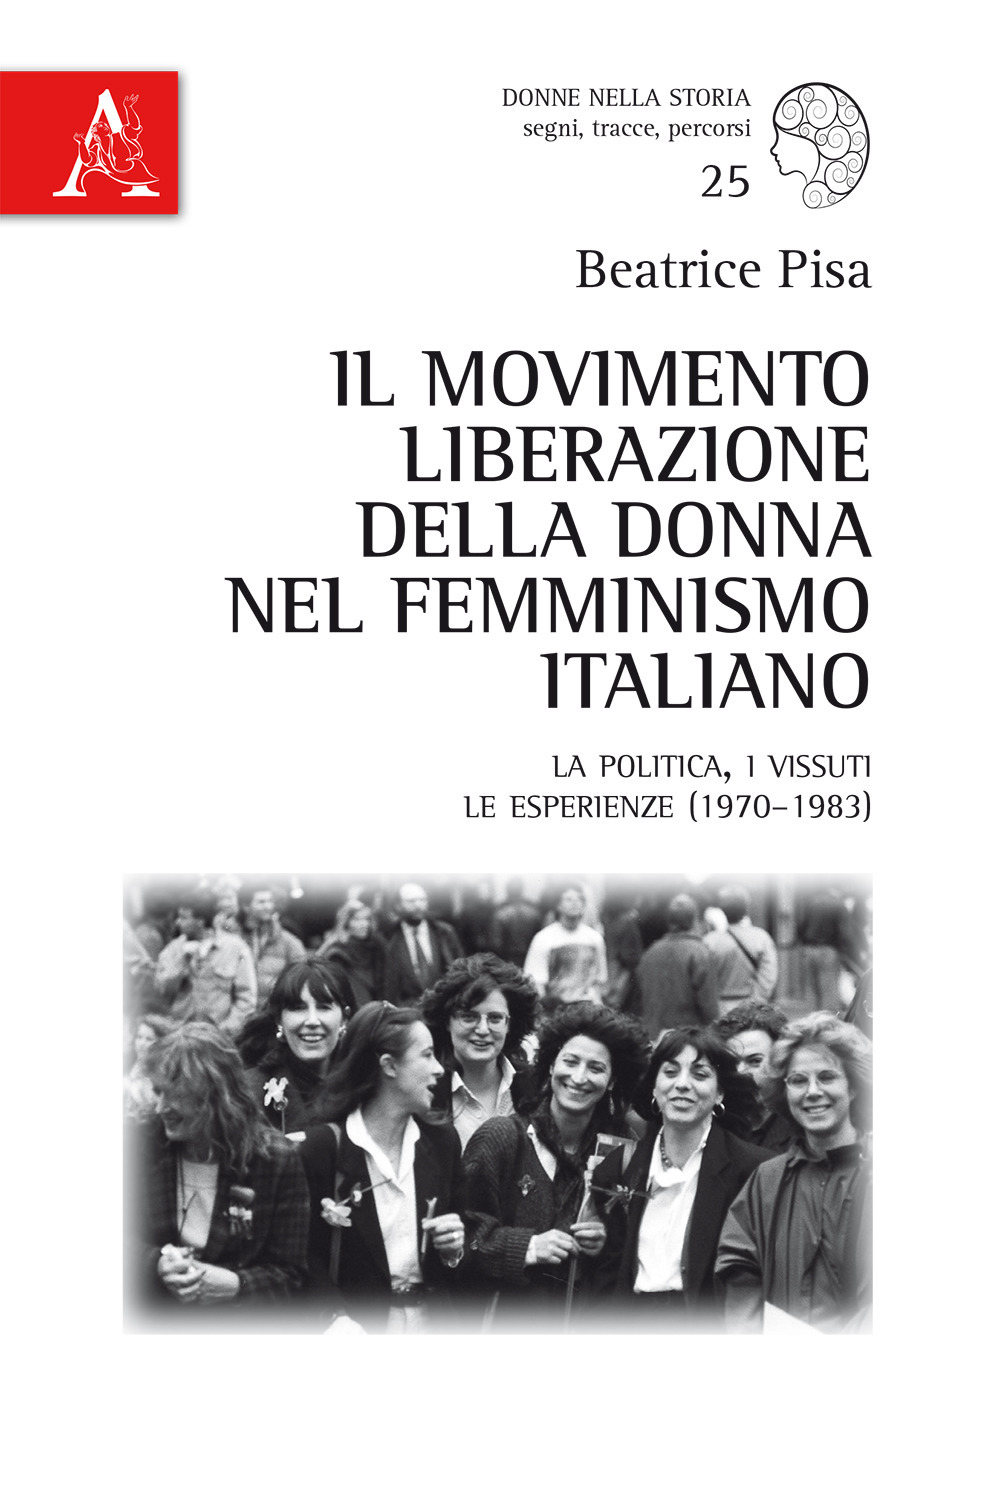 Il Movimento Liberazione della Donna nel femminismo italiano. La politica, i vissuti, le esperienze (1970-1983)